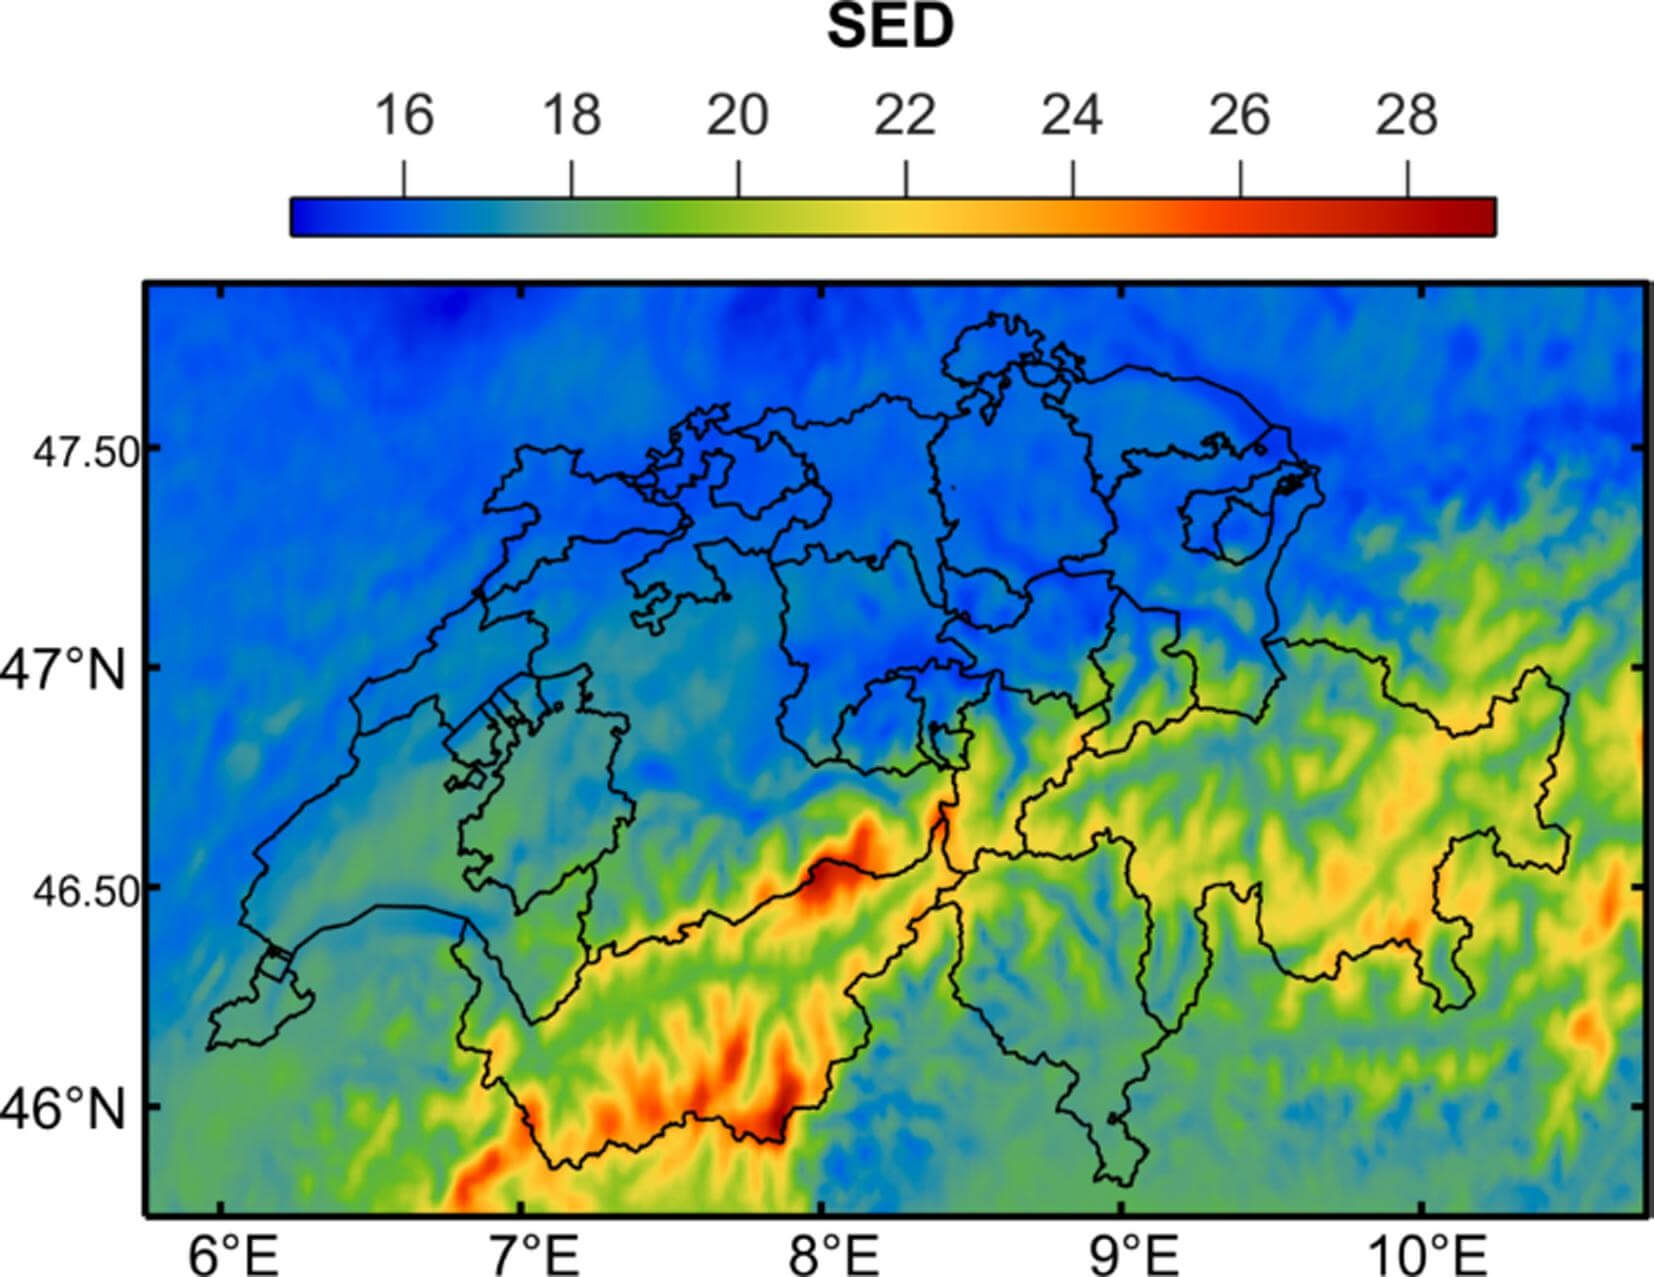 Cartographie de l’exposition journalière moyenne en UV Erythemal en Suisse exprimés en SED 